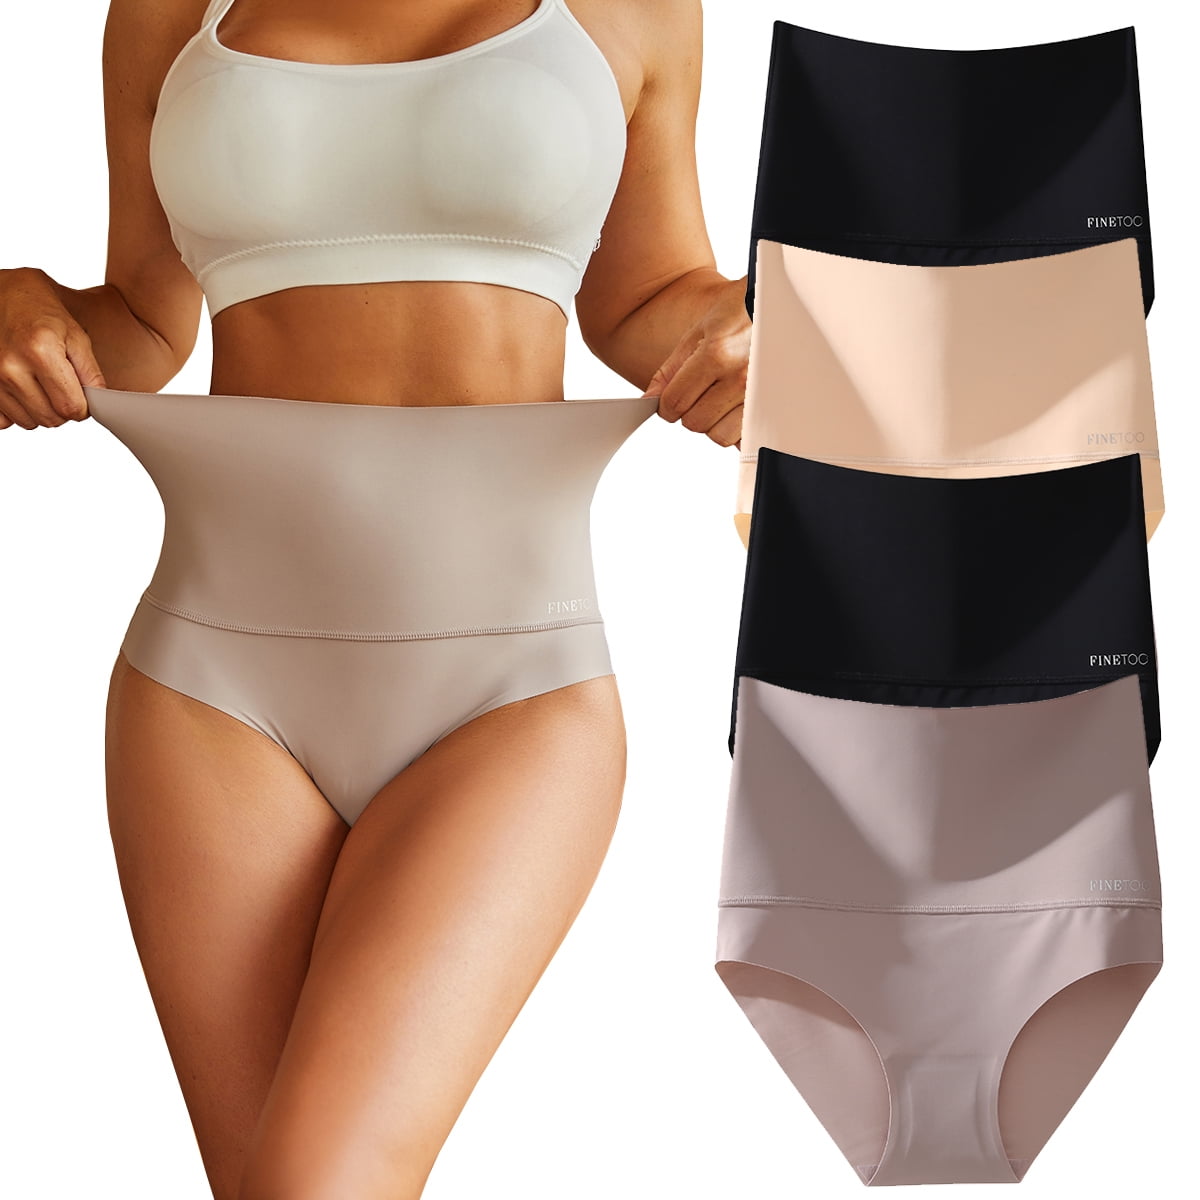 Lolmot Women's High Waist Cotton Underwear Stretch Briefs Soft Comfy Ladies  Panties Seamless Tummy Control Body Shaper Underwear